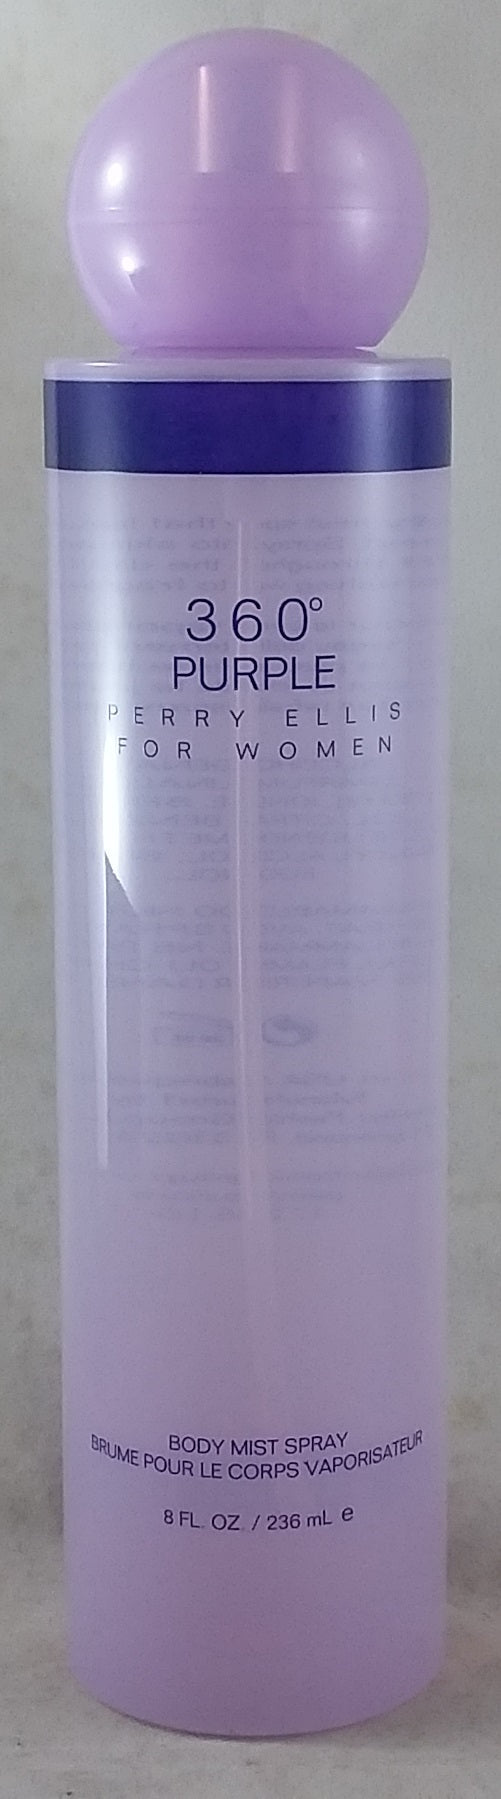 Perry Ellis 360° Purple for Women, 236ml Body Mist